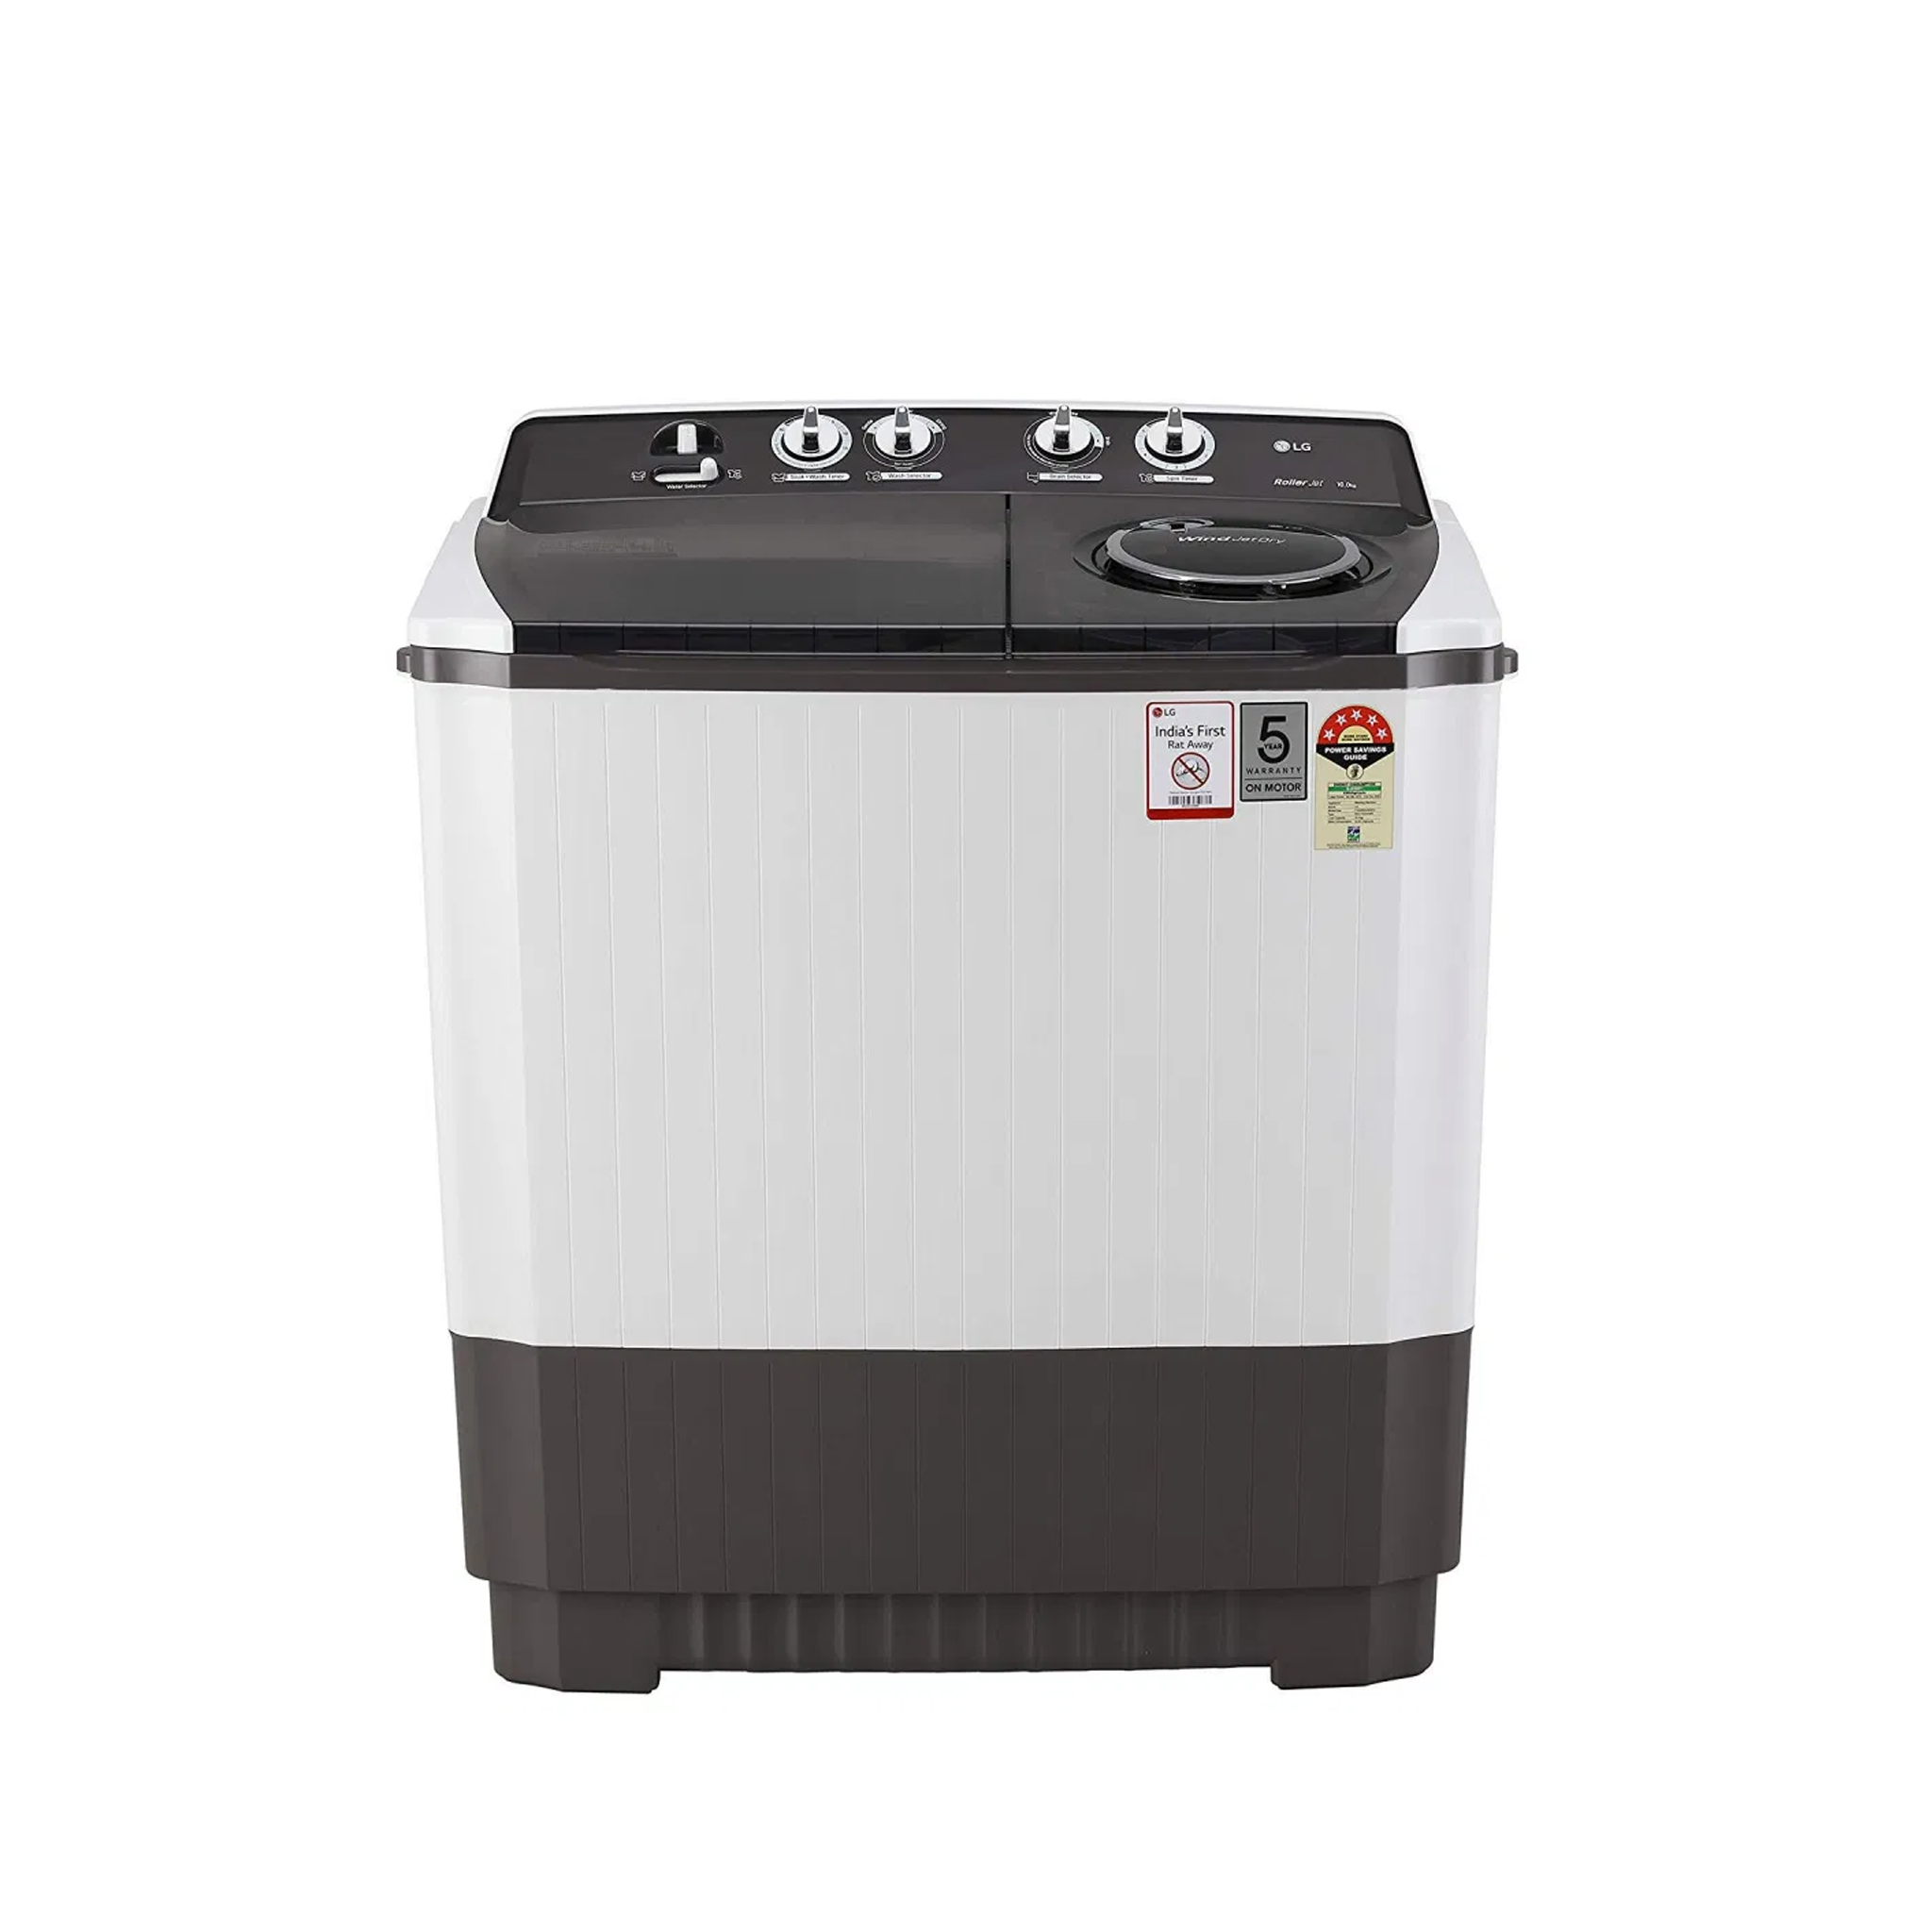 LG Washing Machine   P1401RONL. ABWPCTCC  11kg